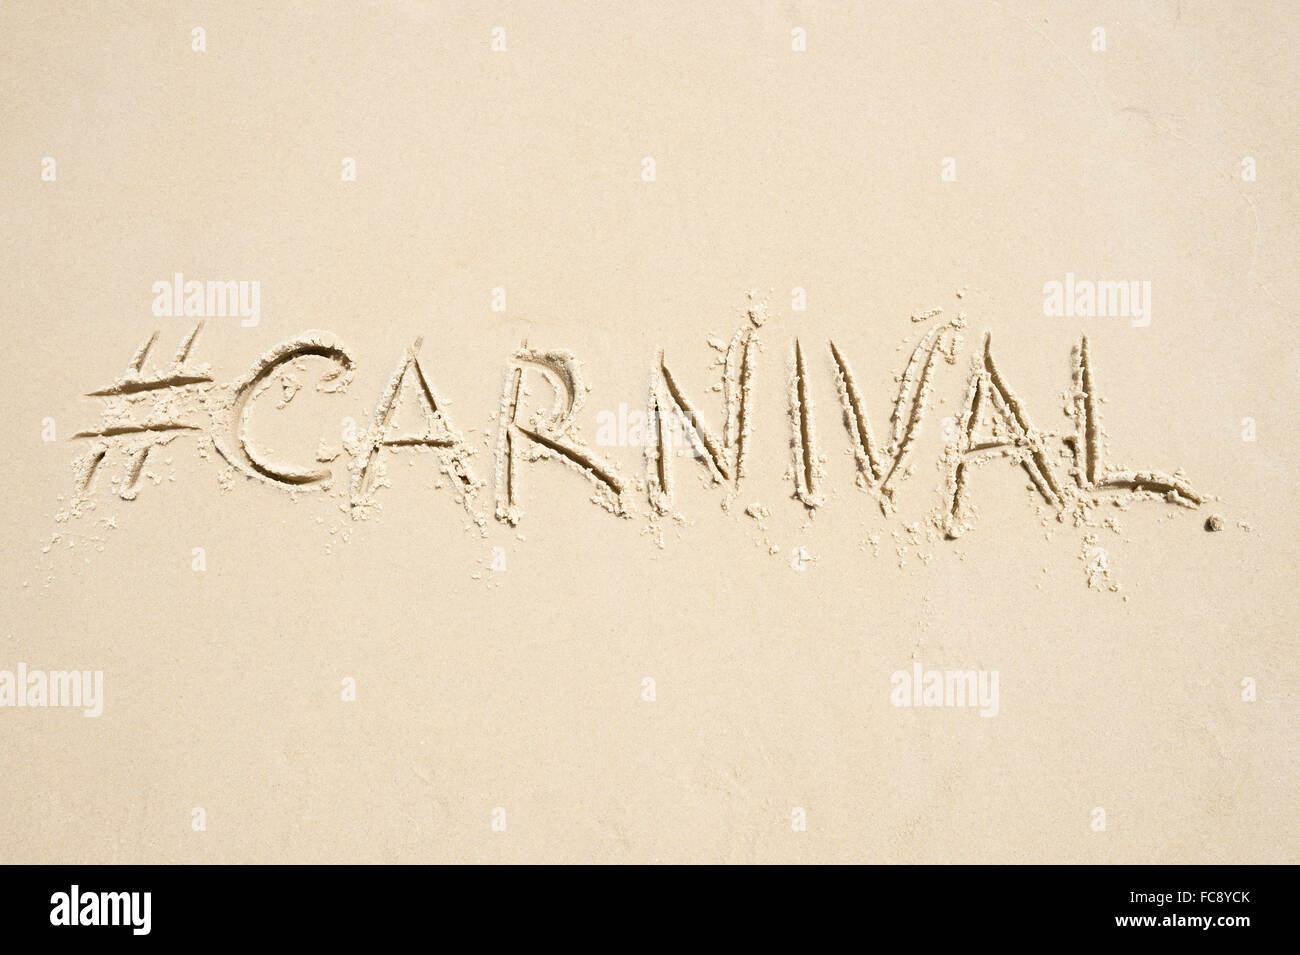 Hashtag-social Media-Nachricht für Karneval (Carnaval in portugiesischer Sprache geschrieben) geschrieben in weichen Sand am Strand von Rio De Janeiro Stockfoto